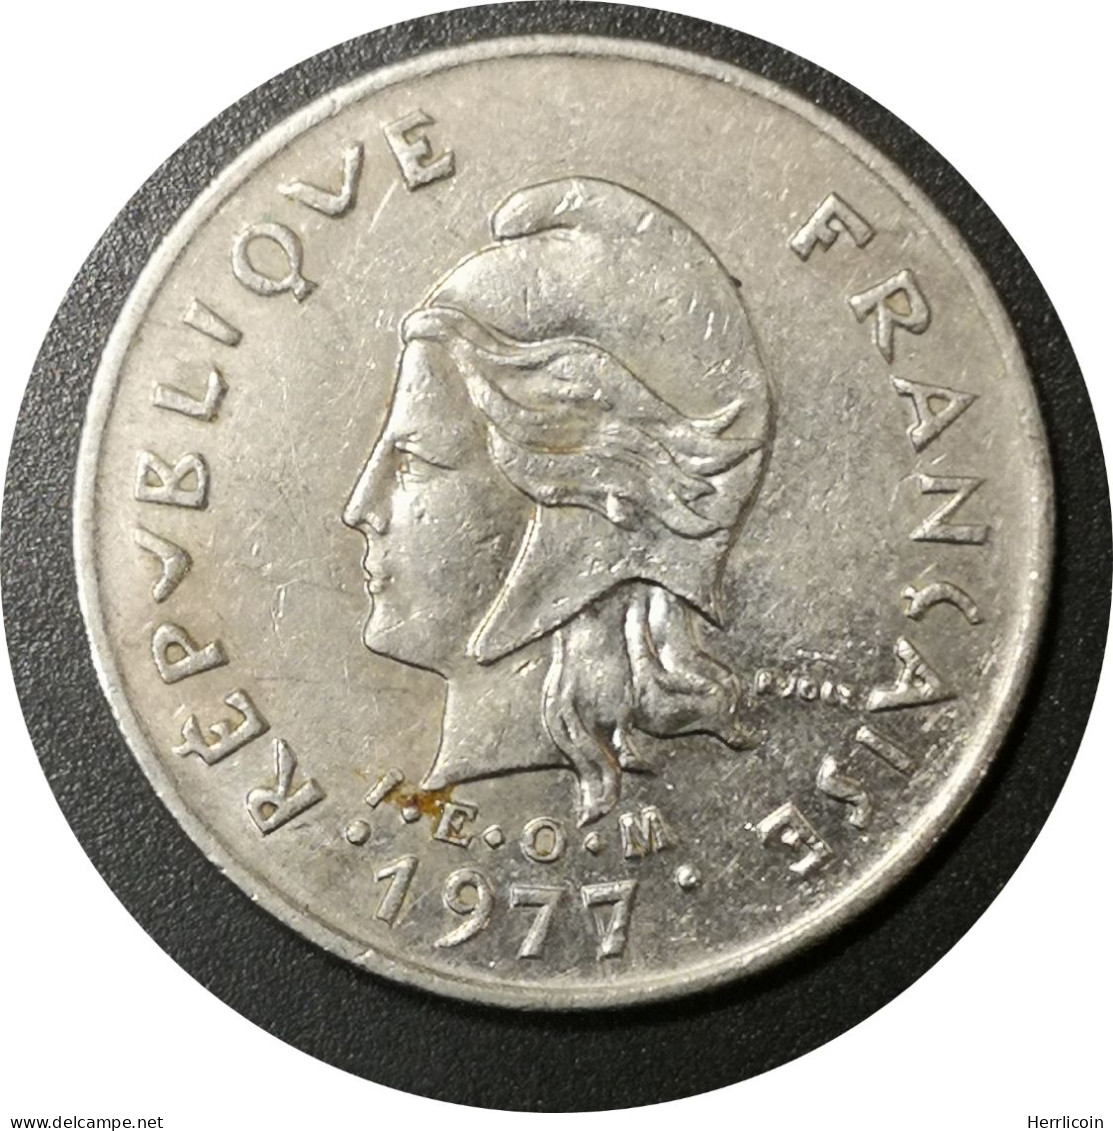 1977 - 10 Francs IEOM Nouvelle Calédonie / KM#11 - Neu-Kaledonien